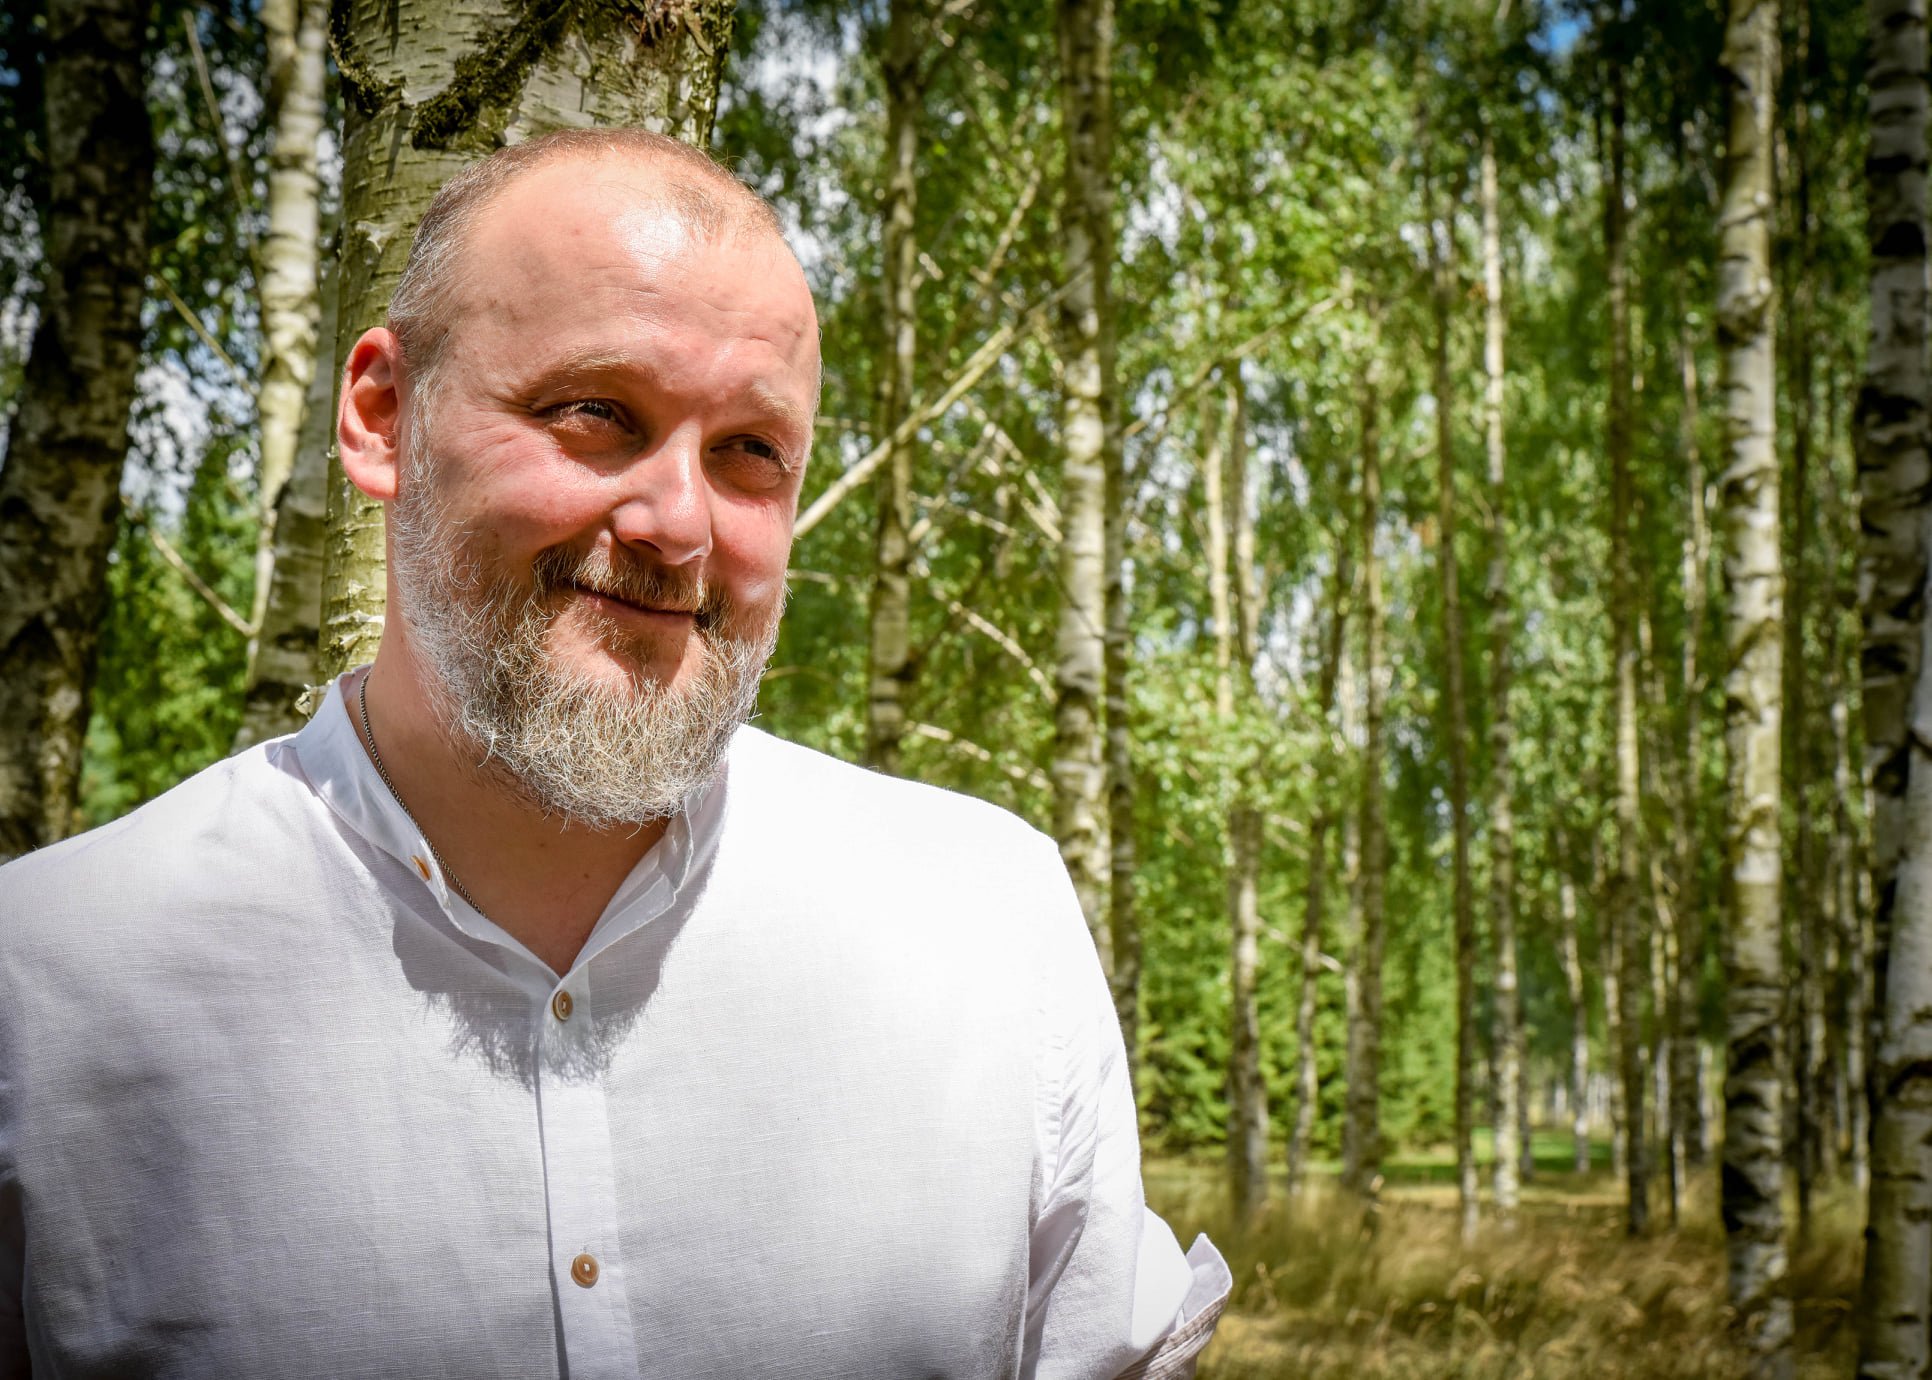 Uśmiechnięty mężczyzna z siwą brodą, ubrany w białą, zapinaną na guziki koszulę, stoi na tle brzozowego lasu.